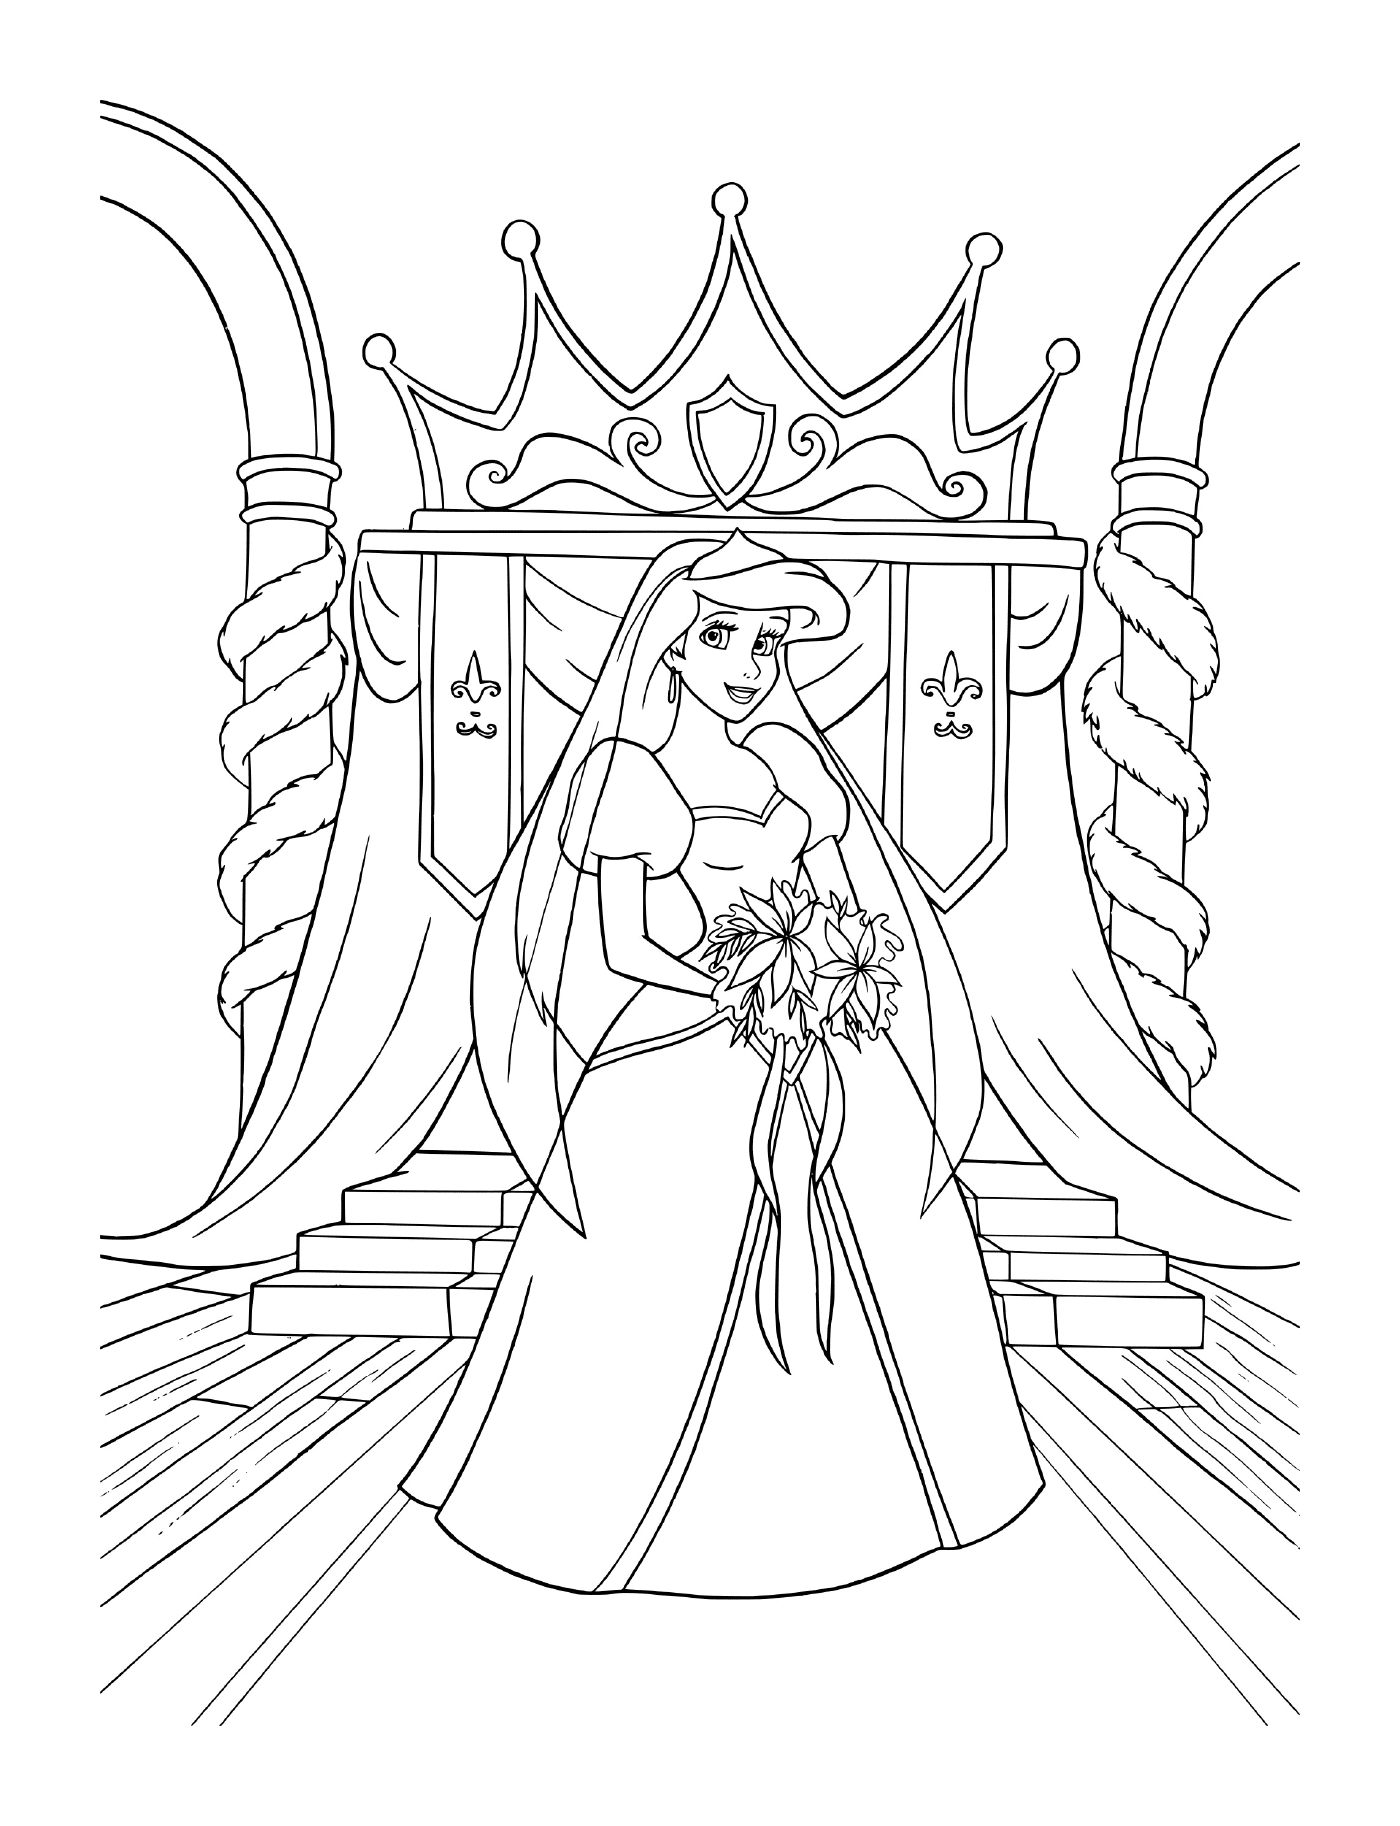  Una novia vestida de novia sentada en un trono 